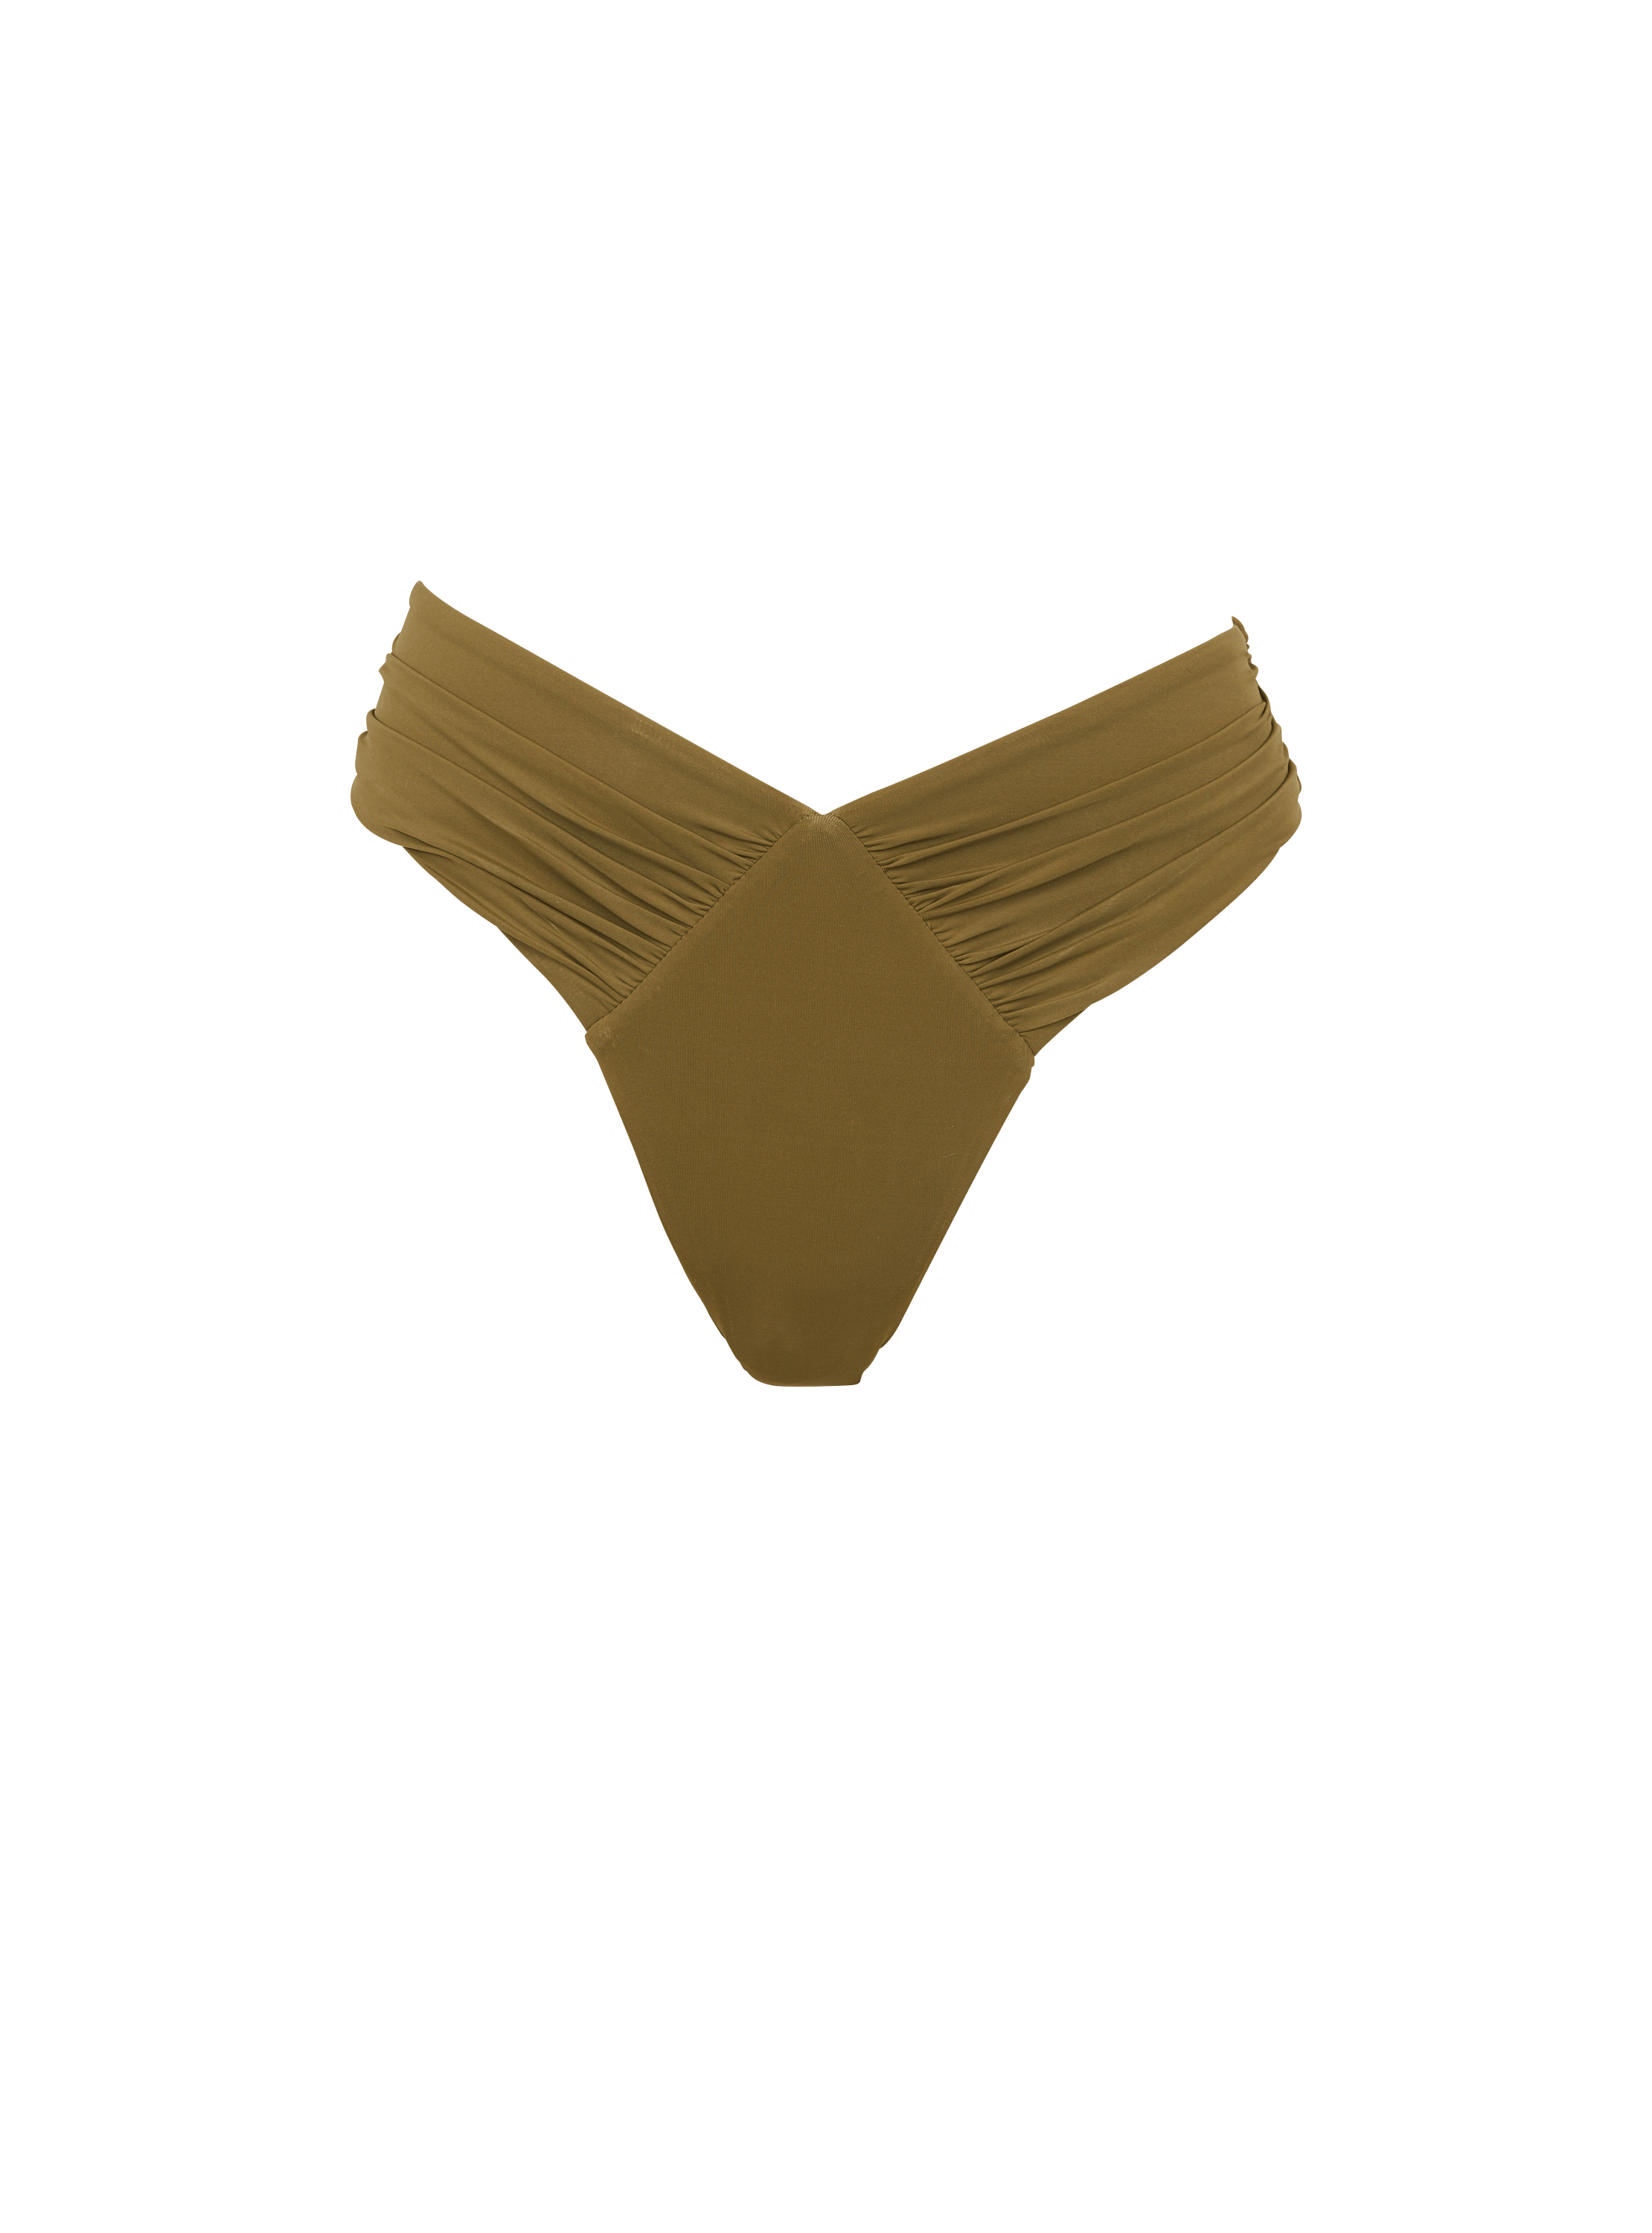 Bikini bottoms